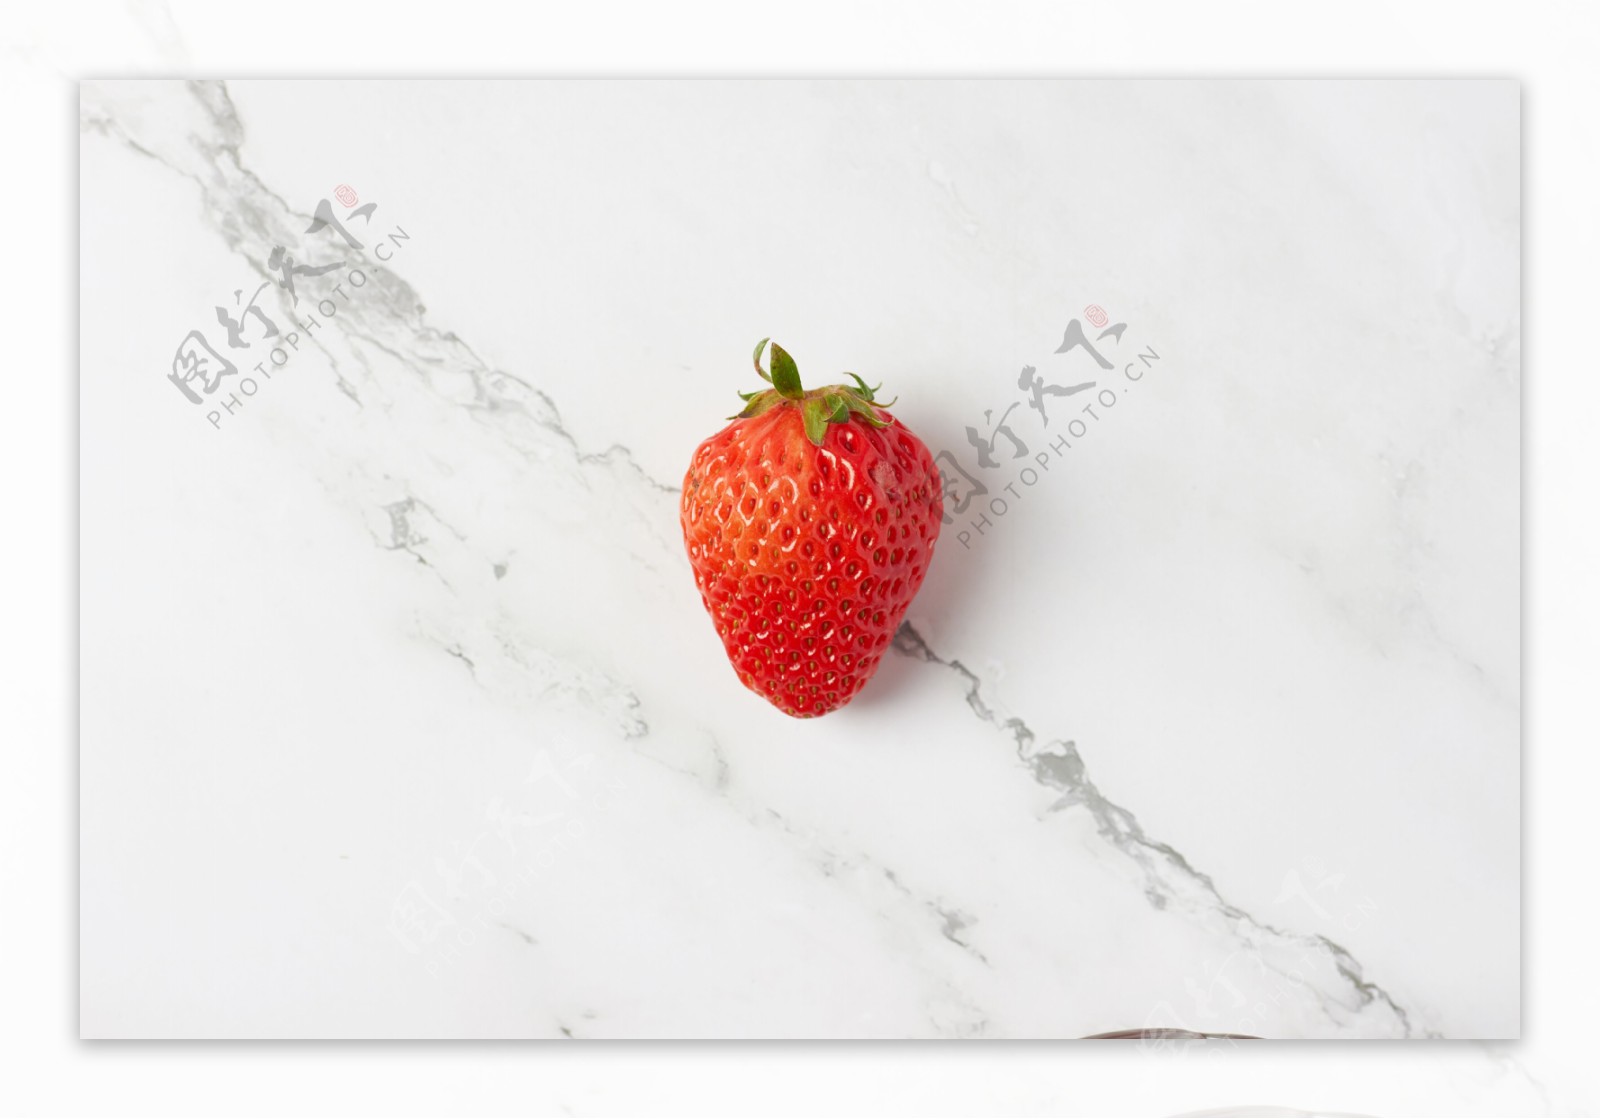 大理石背景和红色草莓